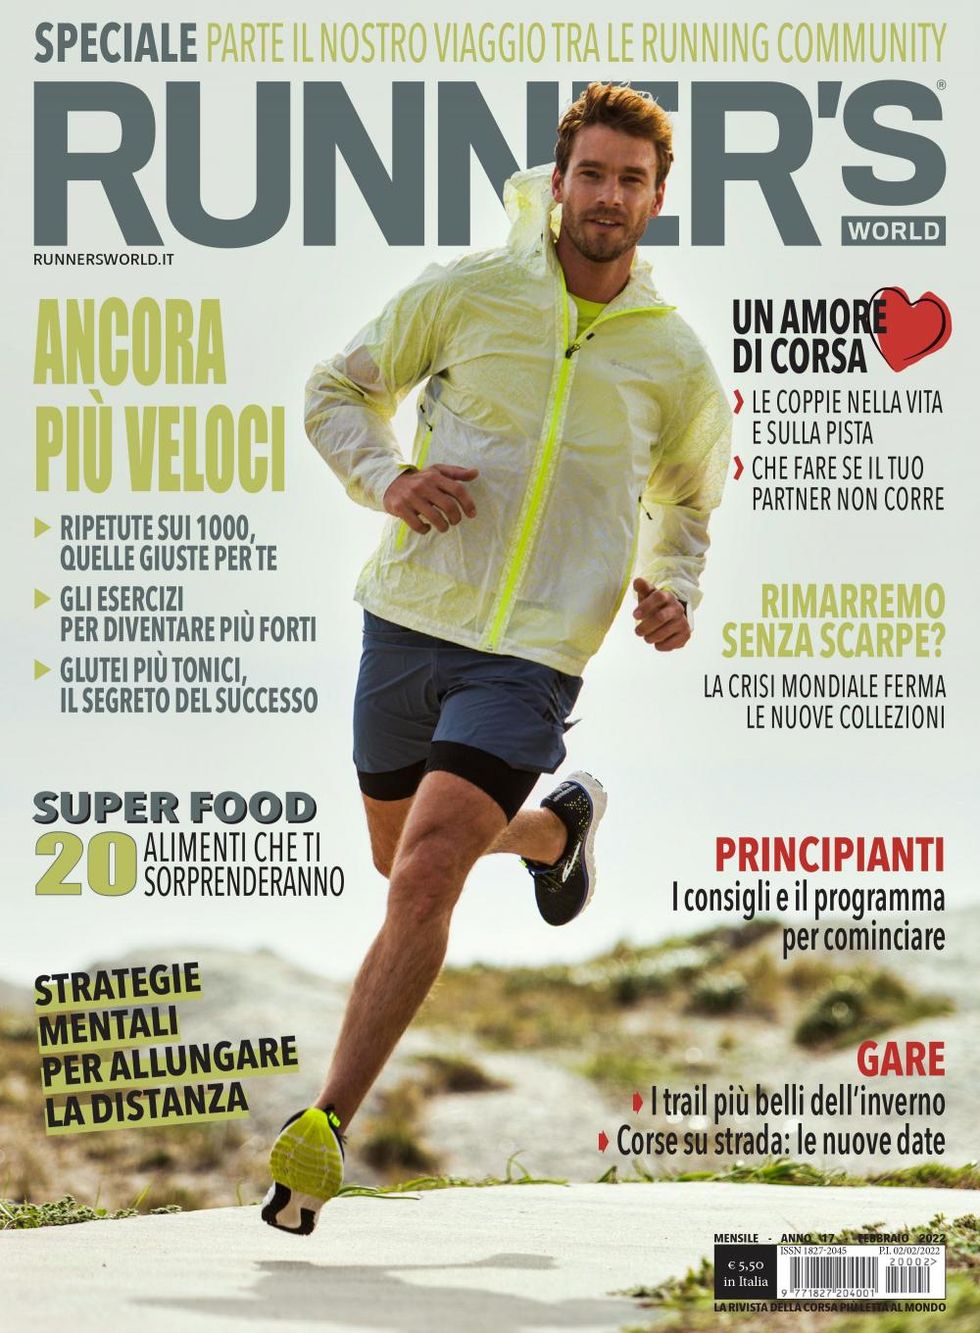 La cover del nuovo numero di Runner's World di febbraio 2022